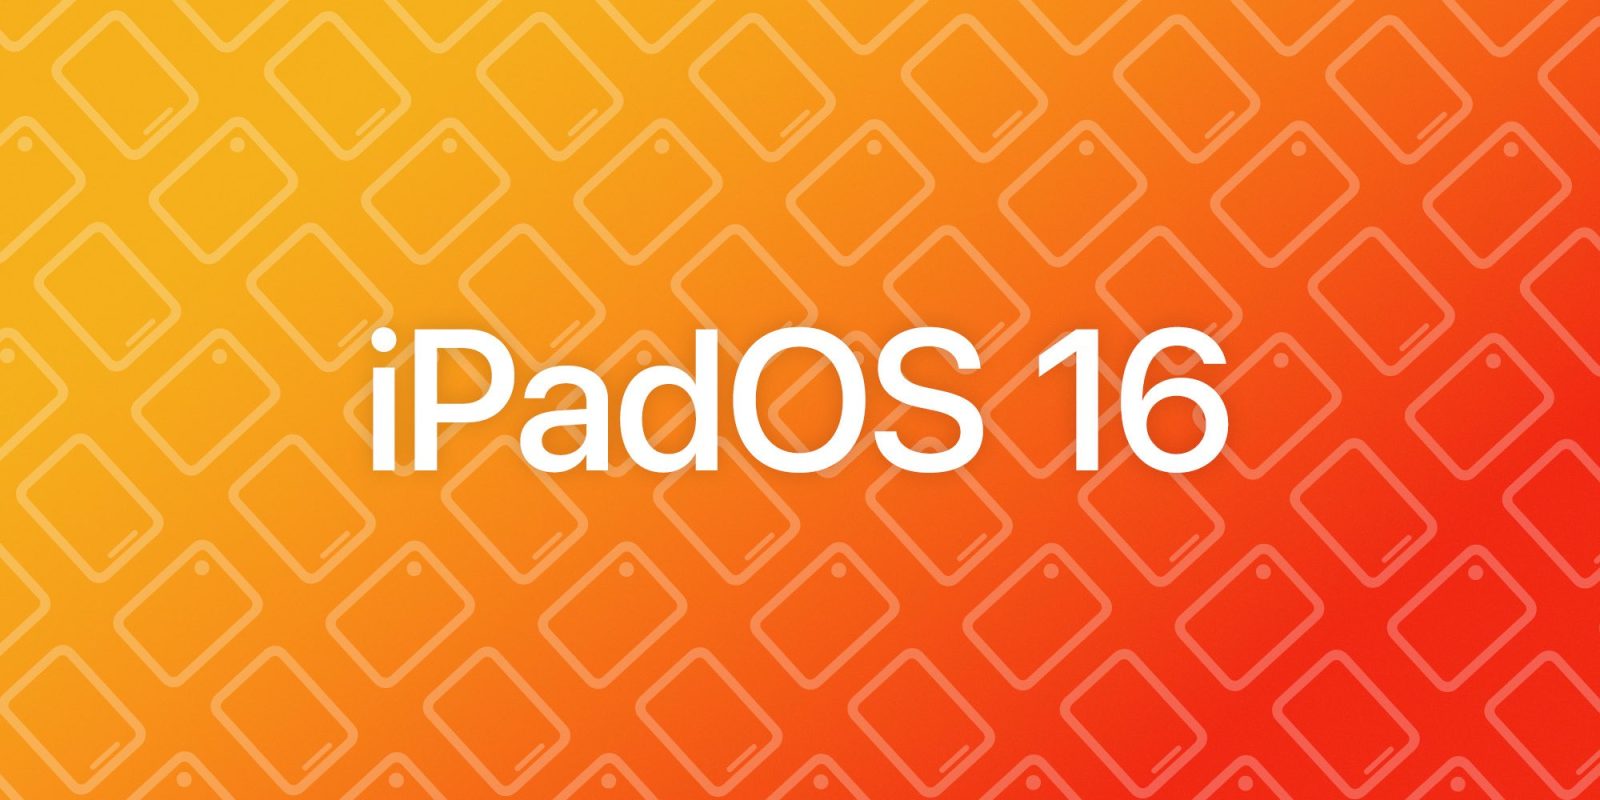 ipadOS 16 image logo